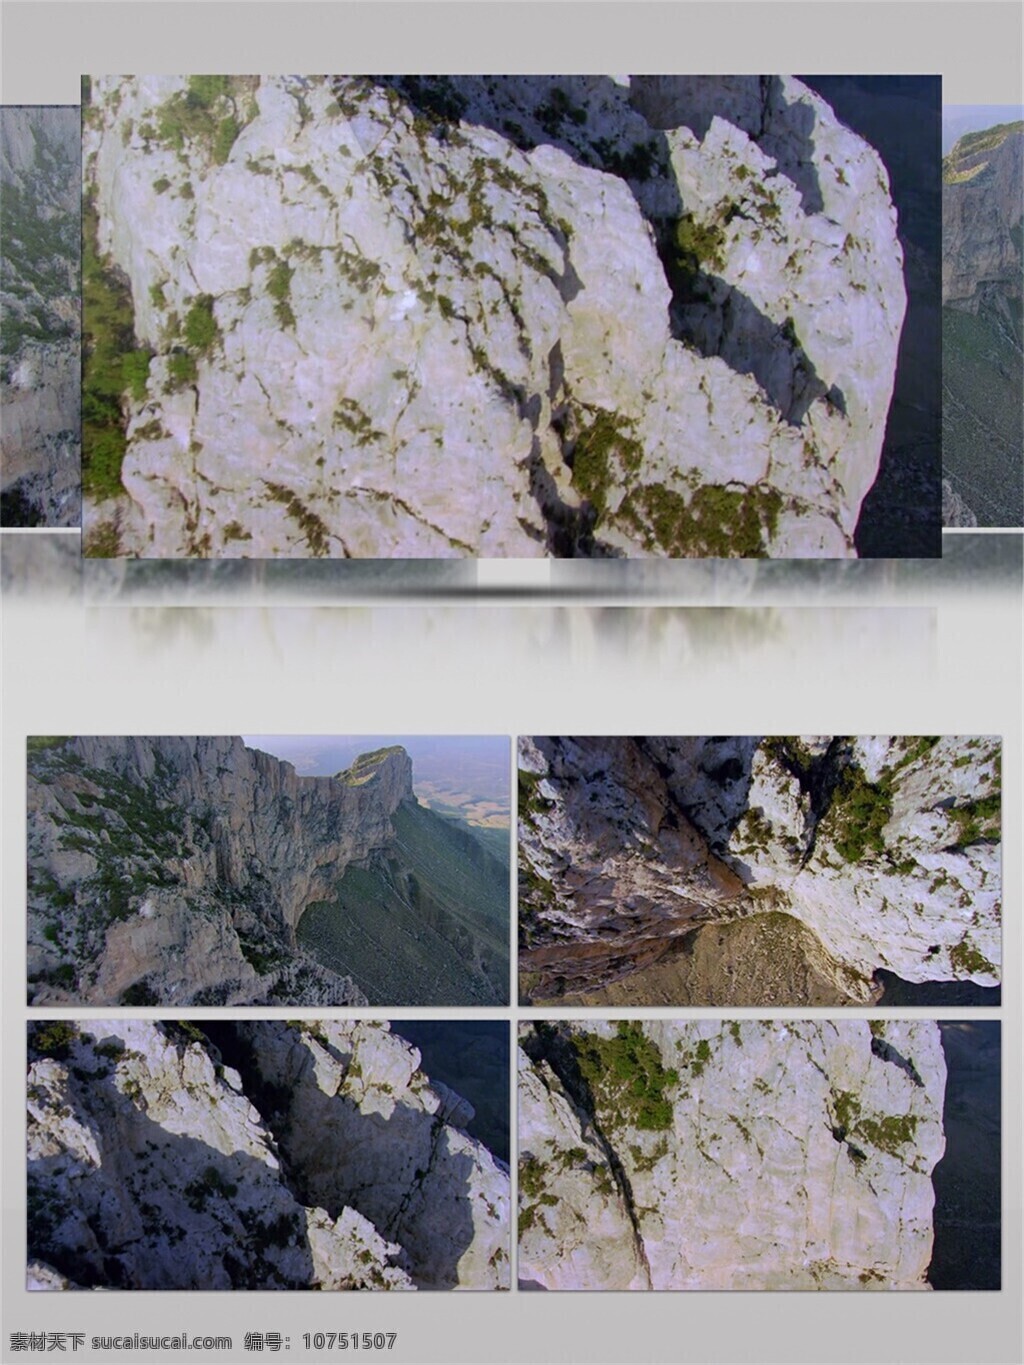 唯美 山丘 山景 视频 音效 视频素材 大自然 壮观 宏伟 绿色 视频音效